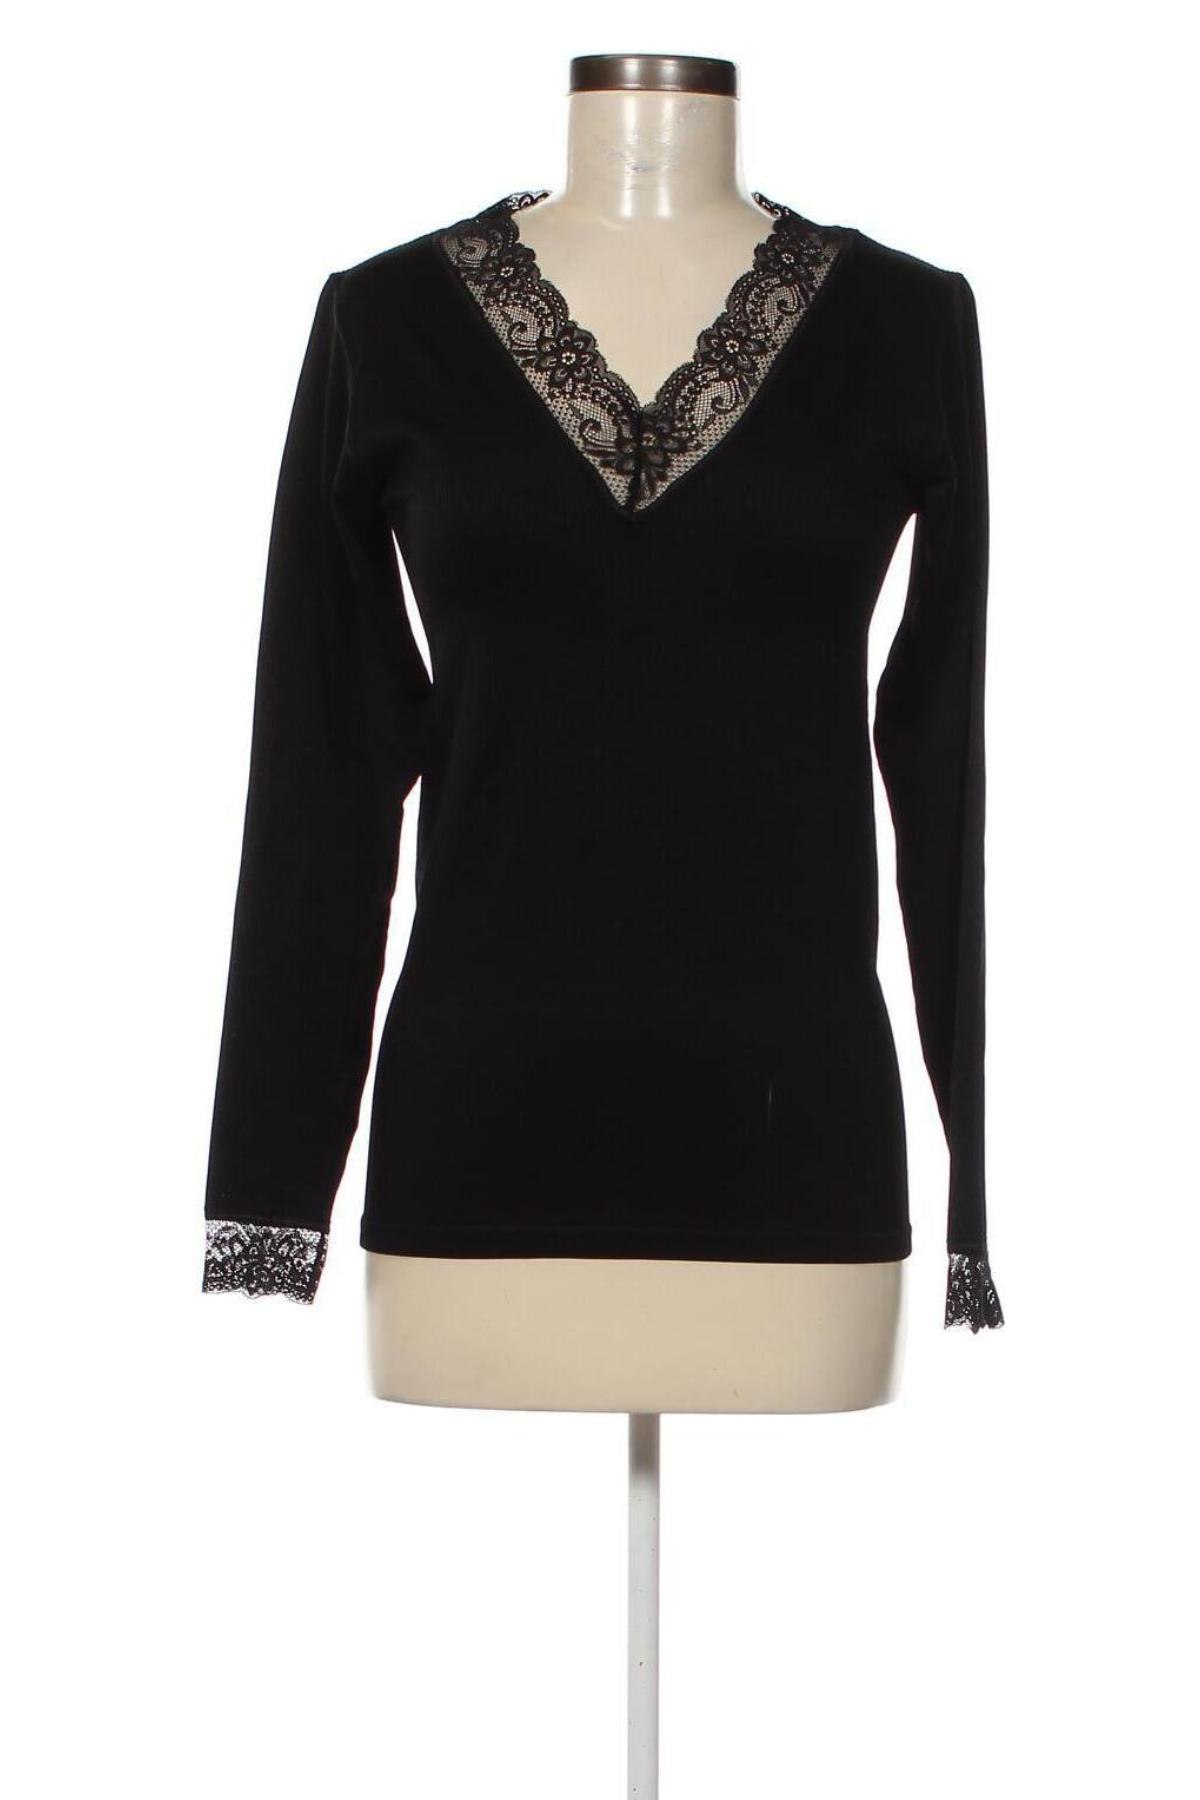 Γυναικεία μπλούζα Culture, Μέγεθος L, Χρώμα Μαύρο, Τιμή 19,85 €